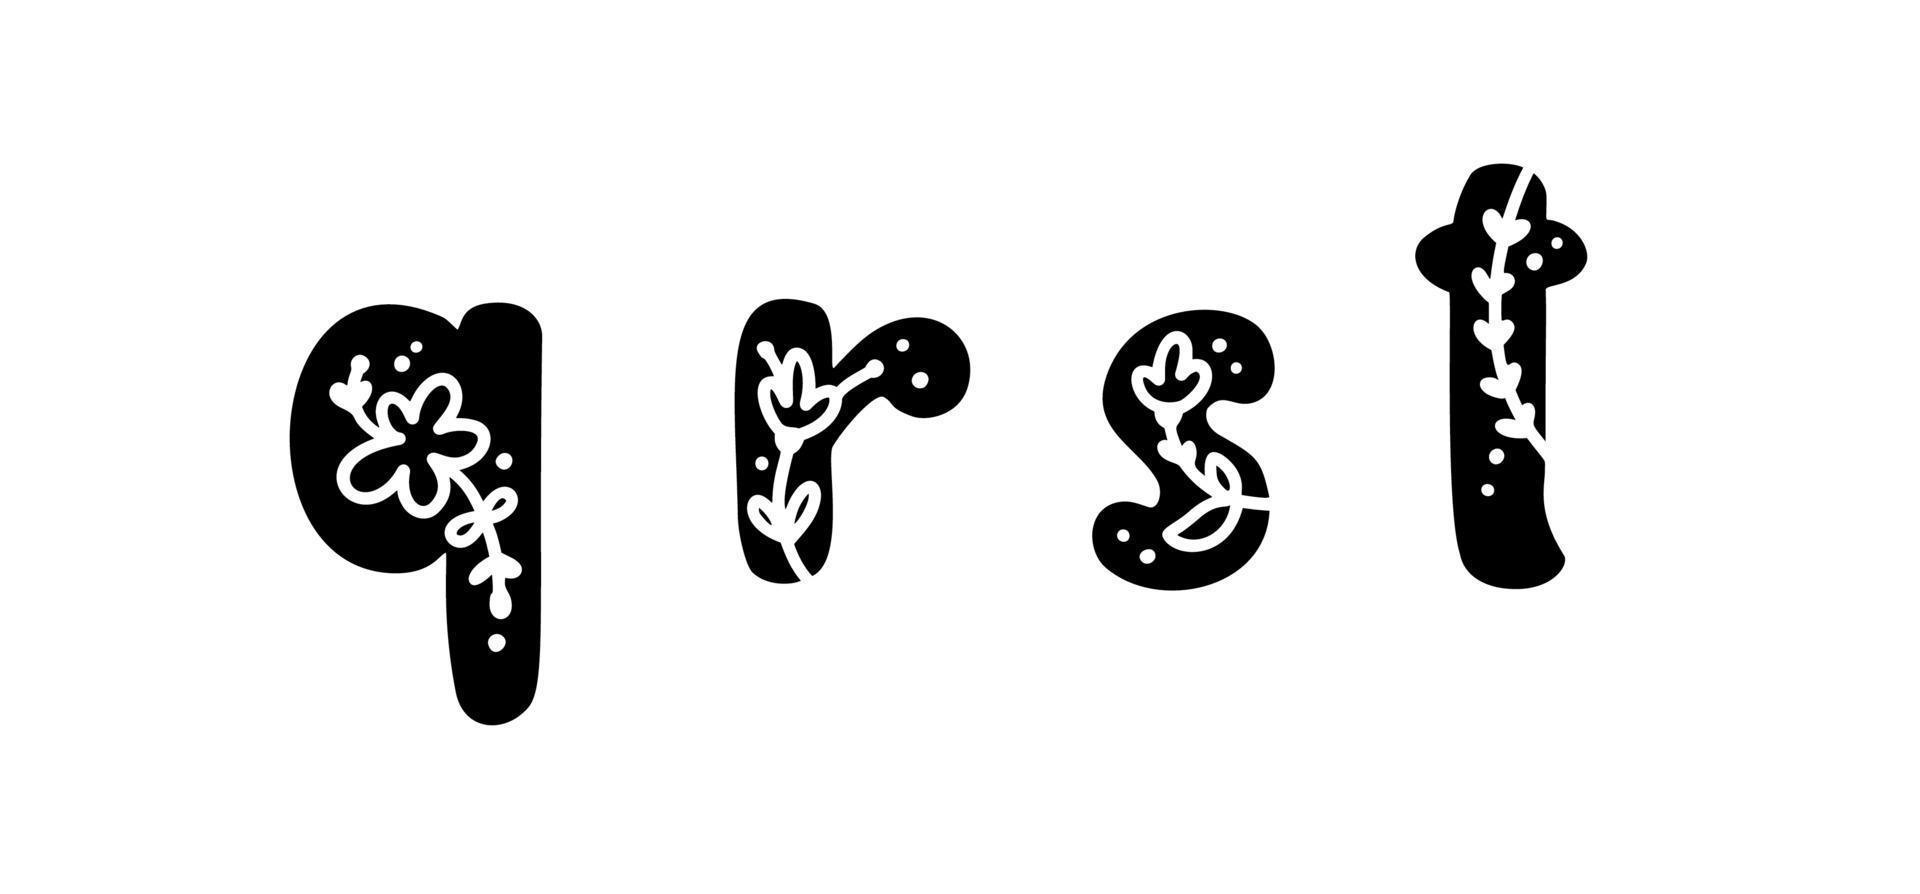 Vintage Blumen kühne Buchstaben qrst Logo Frühling. klassische Sommerbuchstaben-Designvektoren mit schwarzer Farbe und Blumenhand gezeichnet mit Monolinmuster vektor